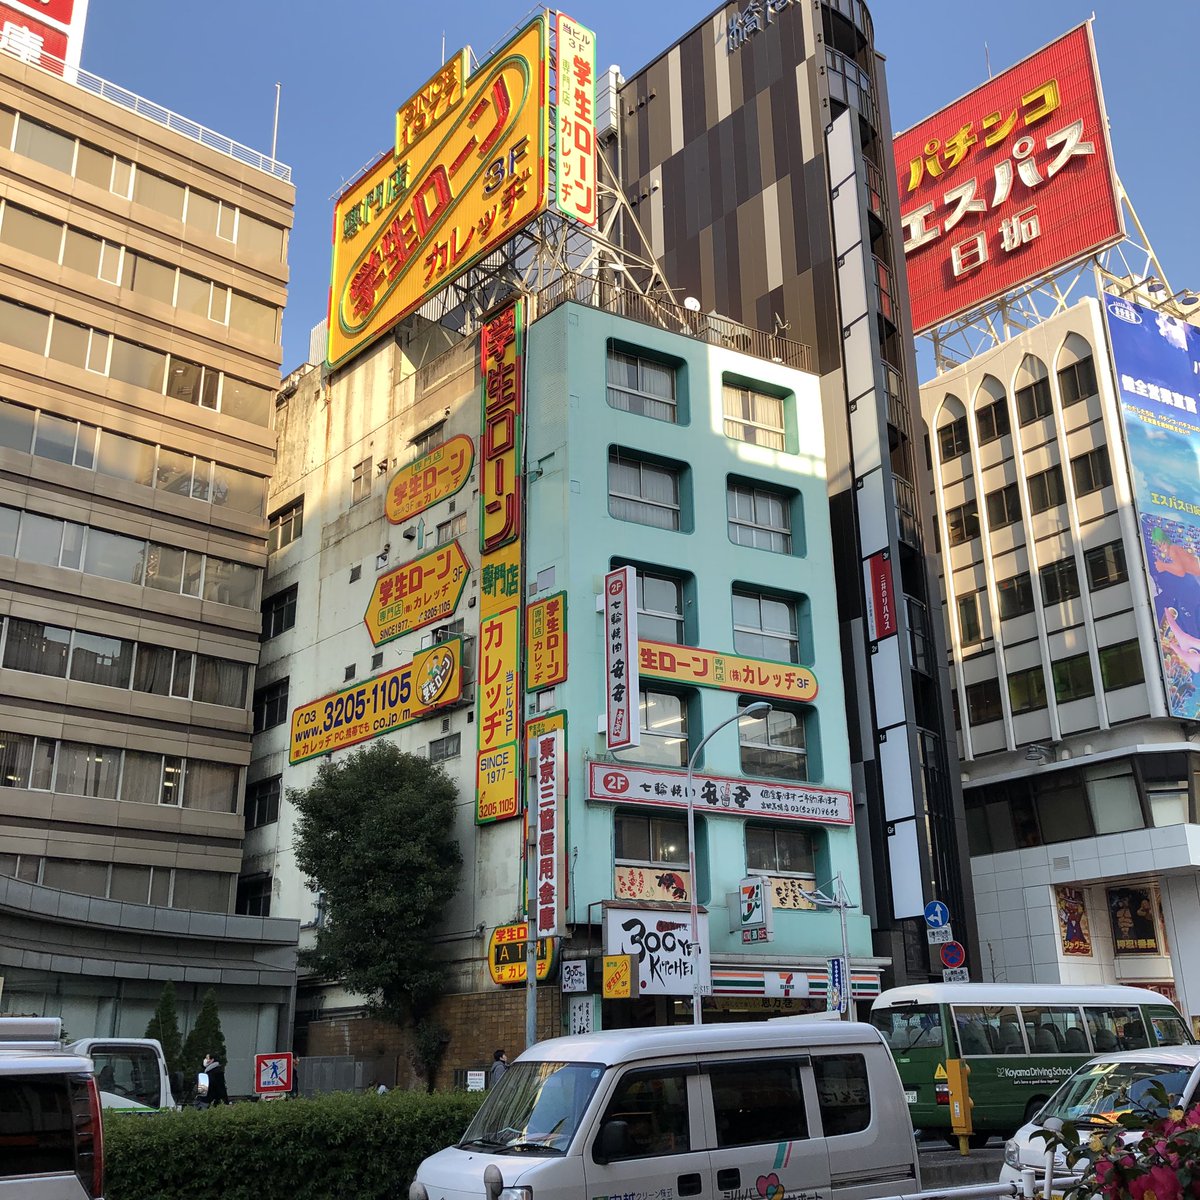 ニコ Niko Auf Twitter 東京は狭い範囲にかわいい建物がいっぱい 何度も見たことある学生ローンのビル こんなに愛くるしかったのか いいビル レトロビル